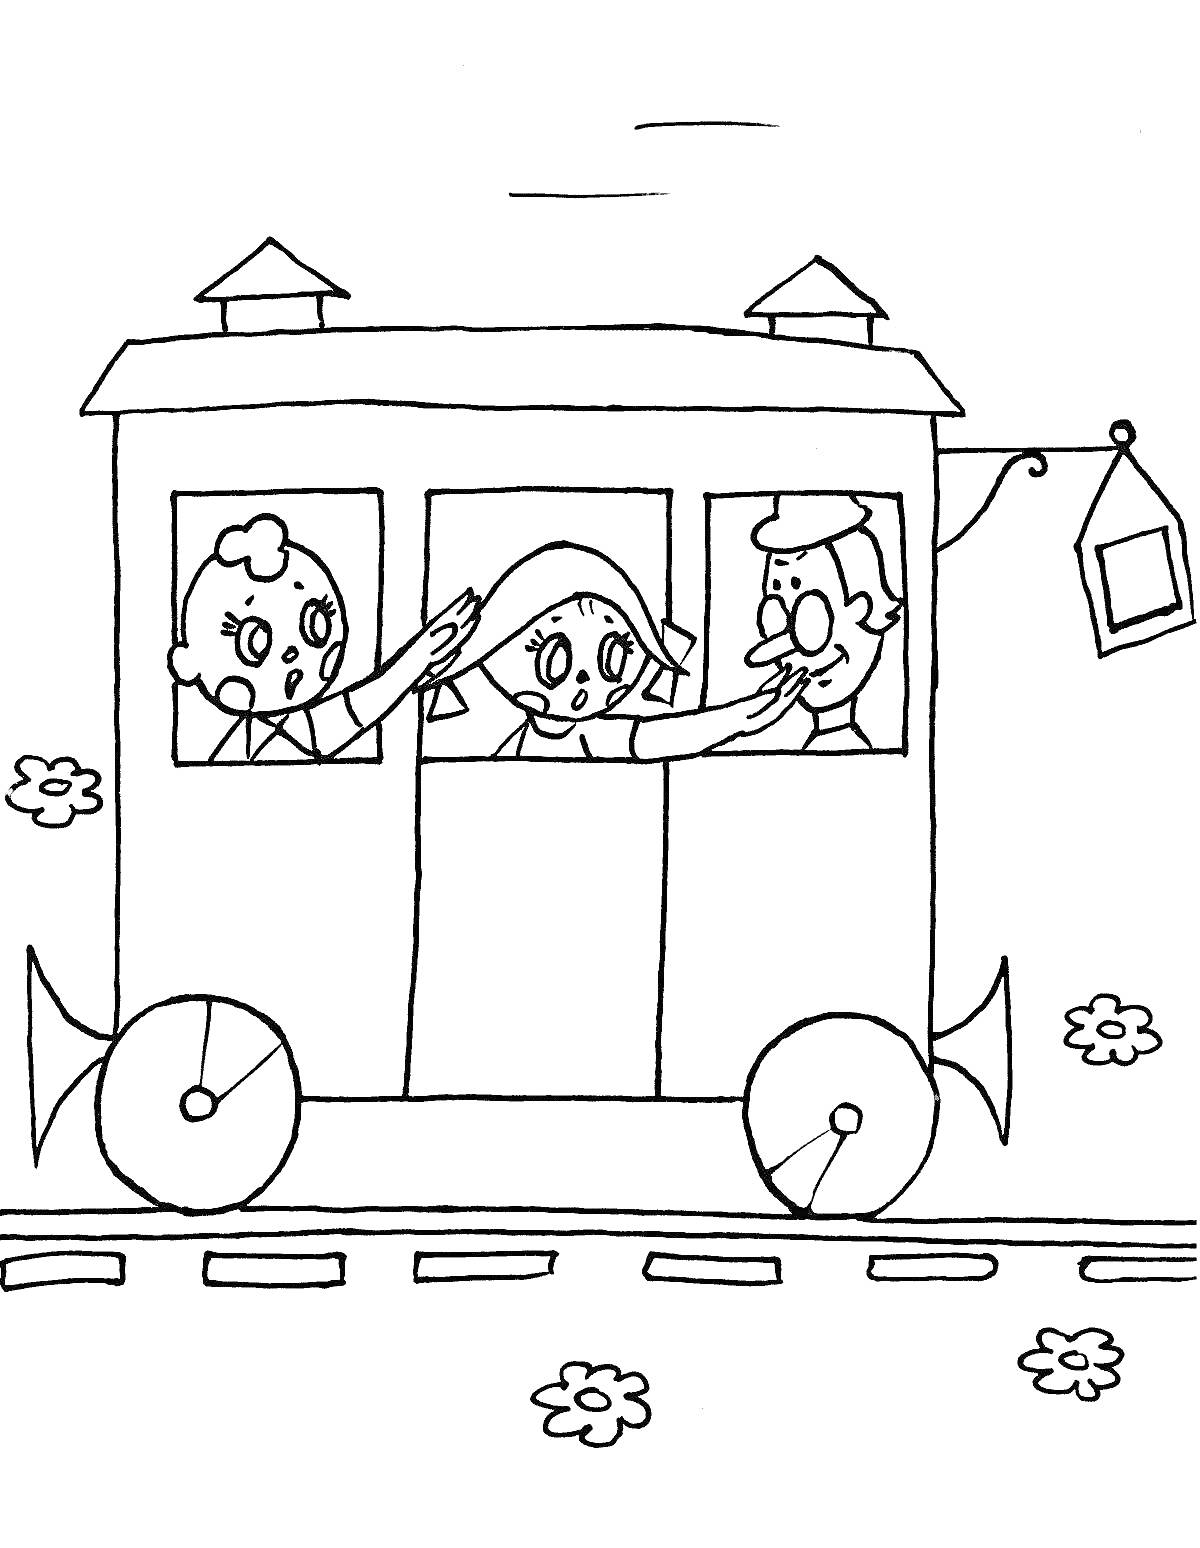 Раскраска Поезд с пассажирами, выглядывающими из окон, железнодорожные пути и цветы рядом с поездом